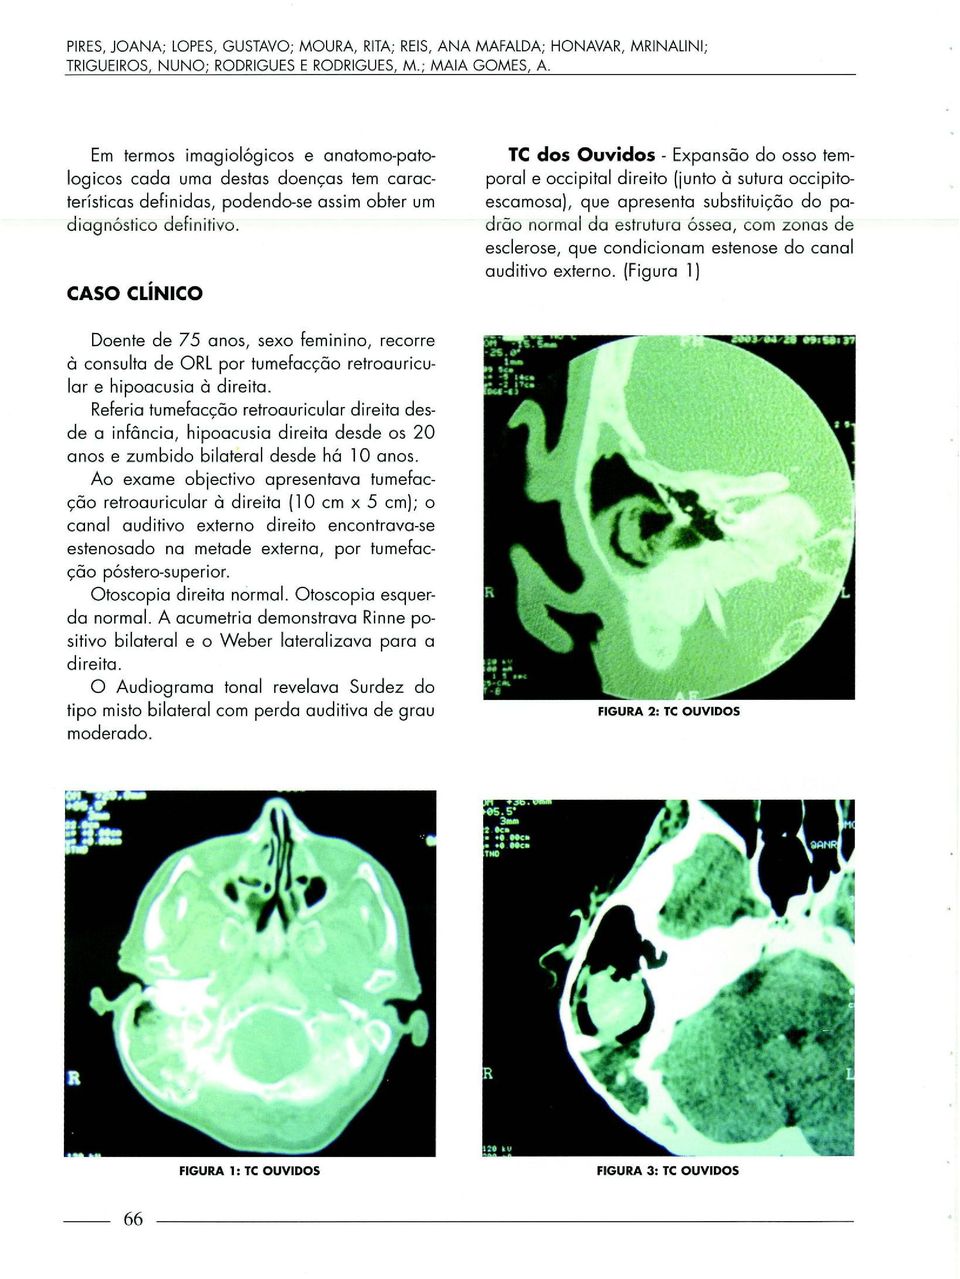 CASO CLÍNICO TC dos Ouvidos- Expansão do osso temporal e occipital direito (junto à sutura occipitoescamosa), que apresenta substituição do padrão normal da estrutura óssea, com zonas de esclerose,